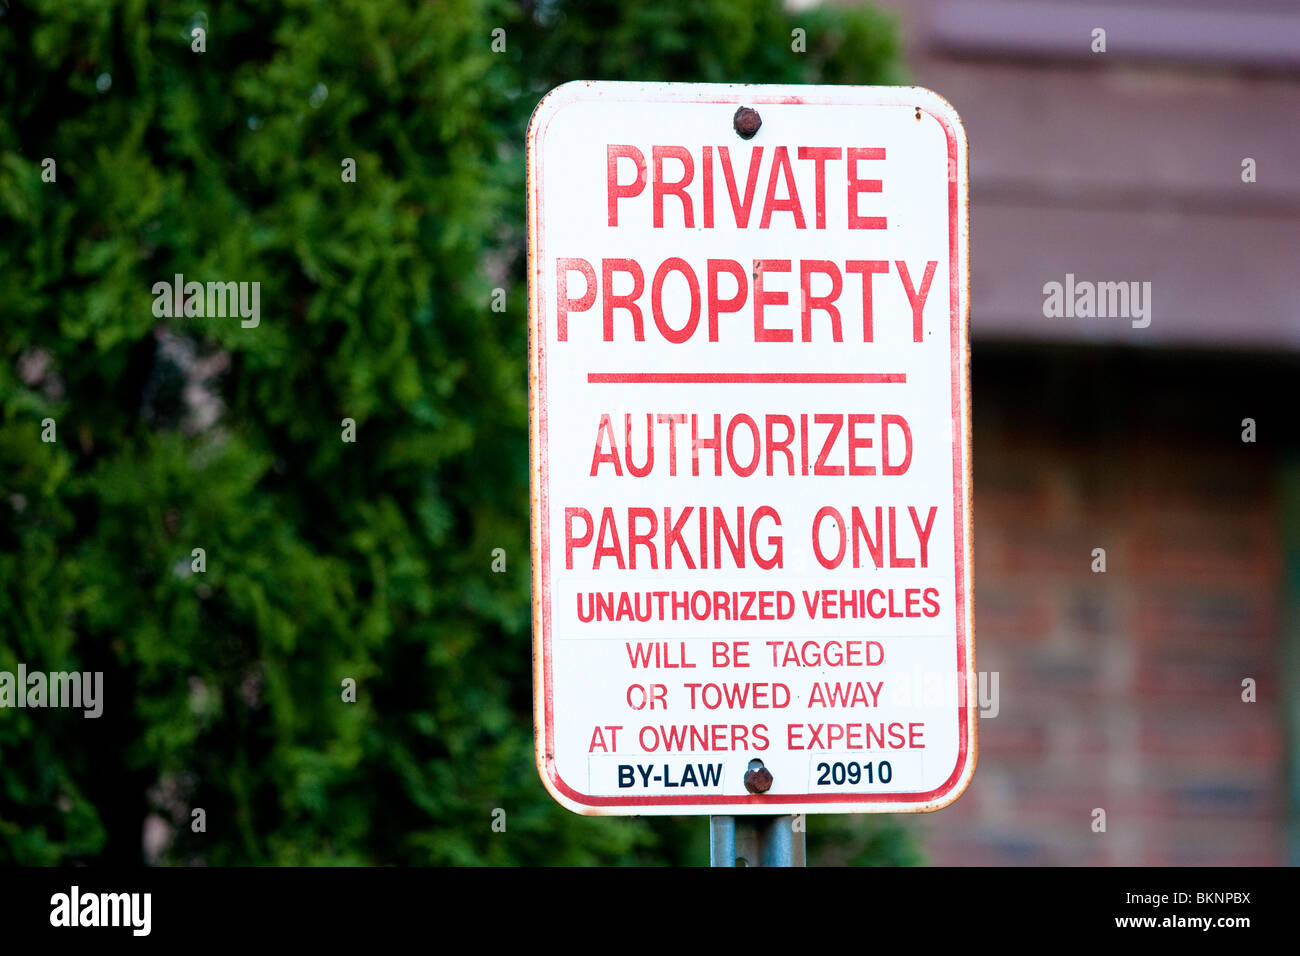 La proprietà privata parcheggio autorizzato solo firmare i veicoli non autorizzati saranno etichettati o trainato a spese del proprietario Foto Stock